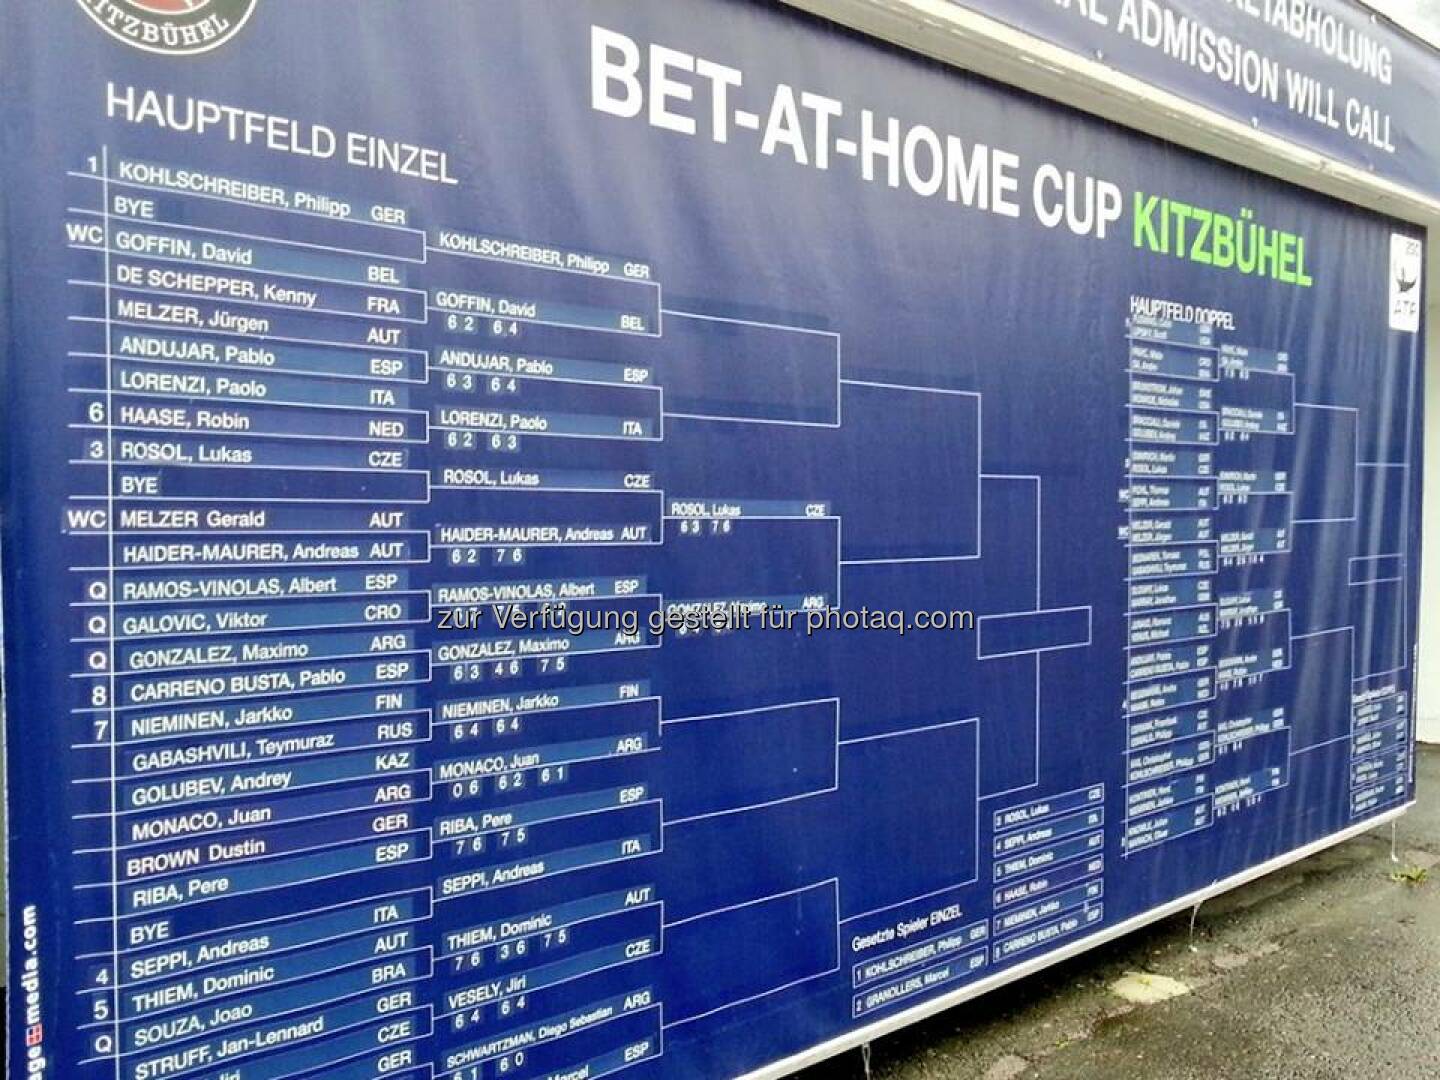 Der aktuelle Turnierraster in Kitzbühel. #betathomeCup  Source: http://facebook.com/betathomecomAustria